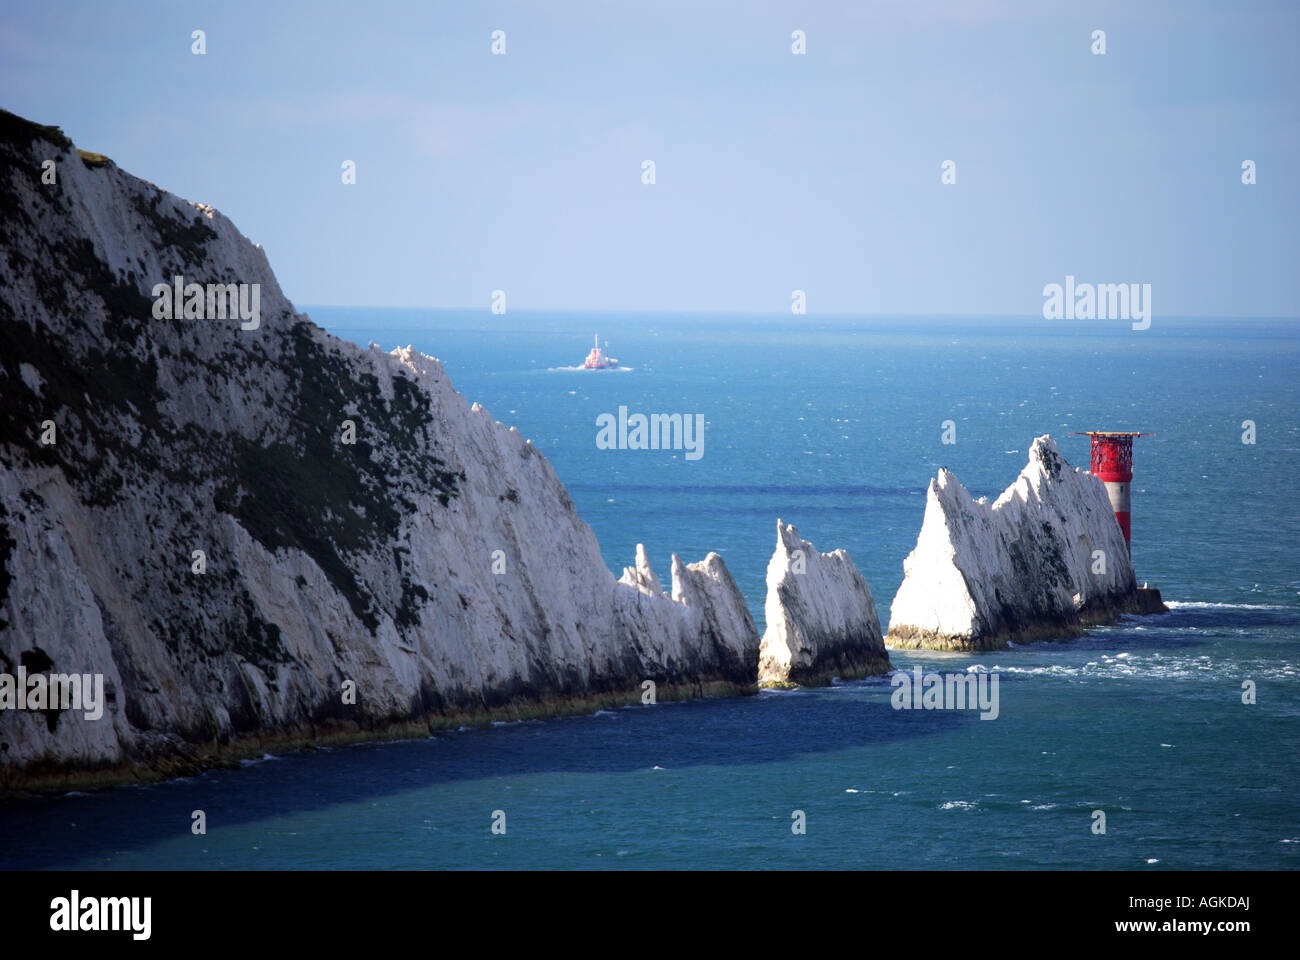 Vue sur les aiguilles, de l'Alun Bay, île de Wight, Angleterre, Royaume-Uni Banque D'Images